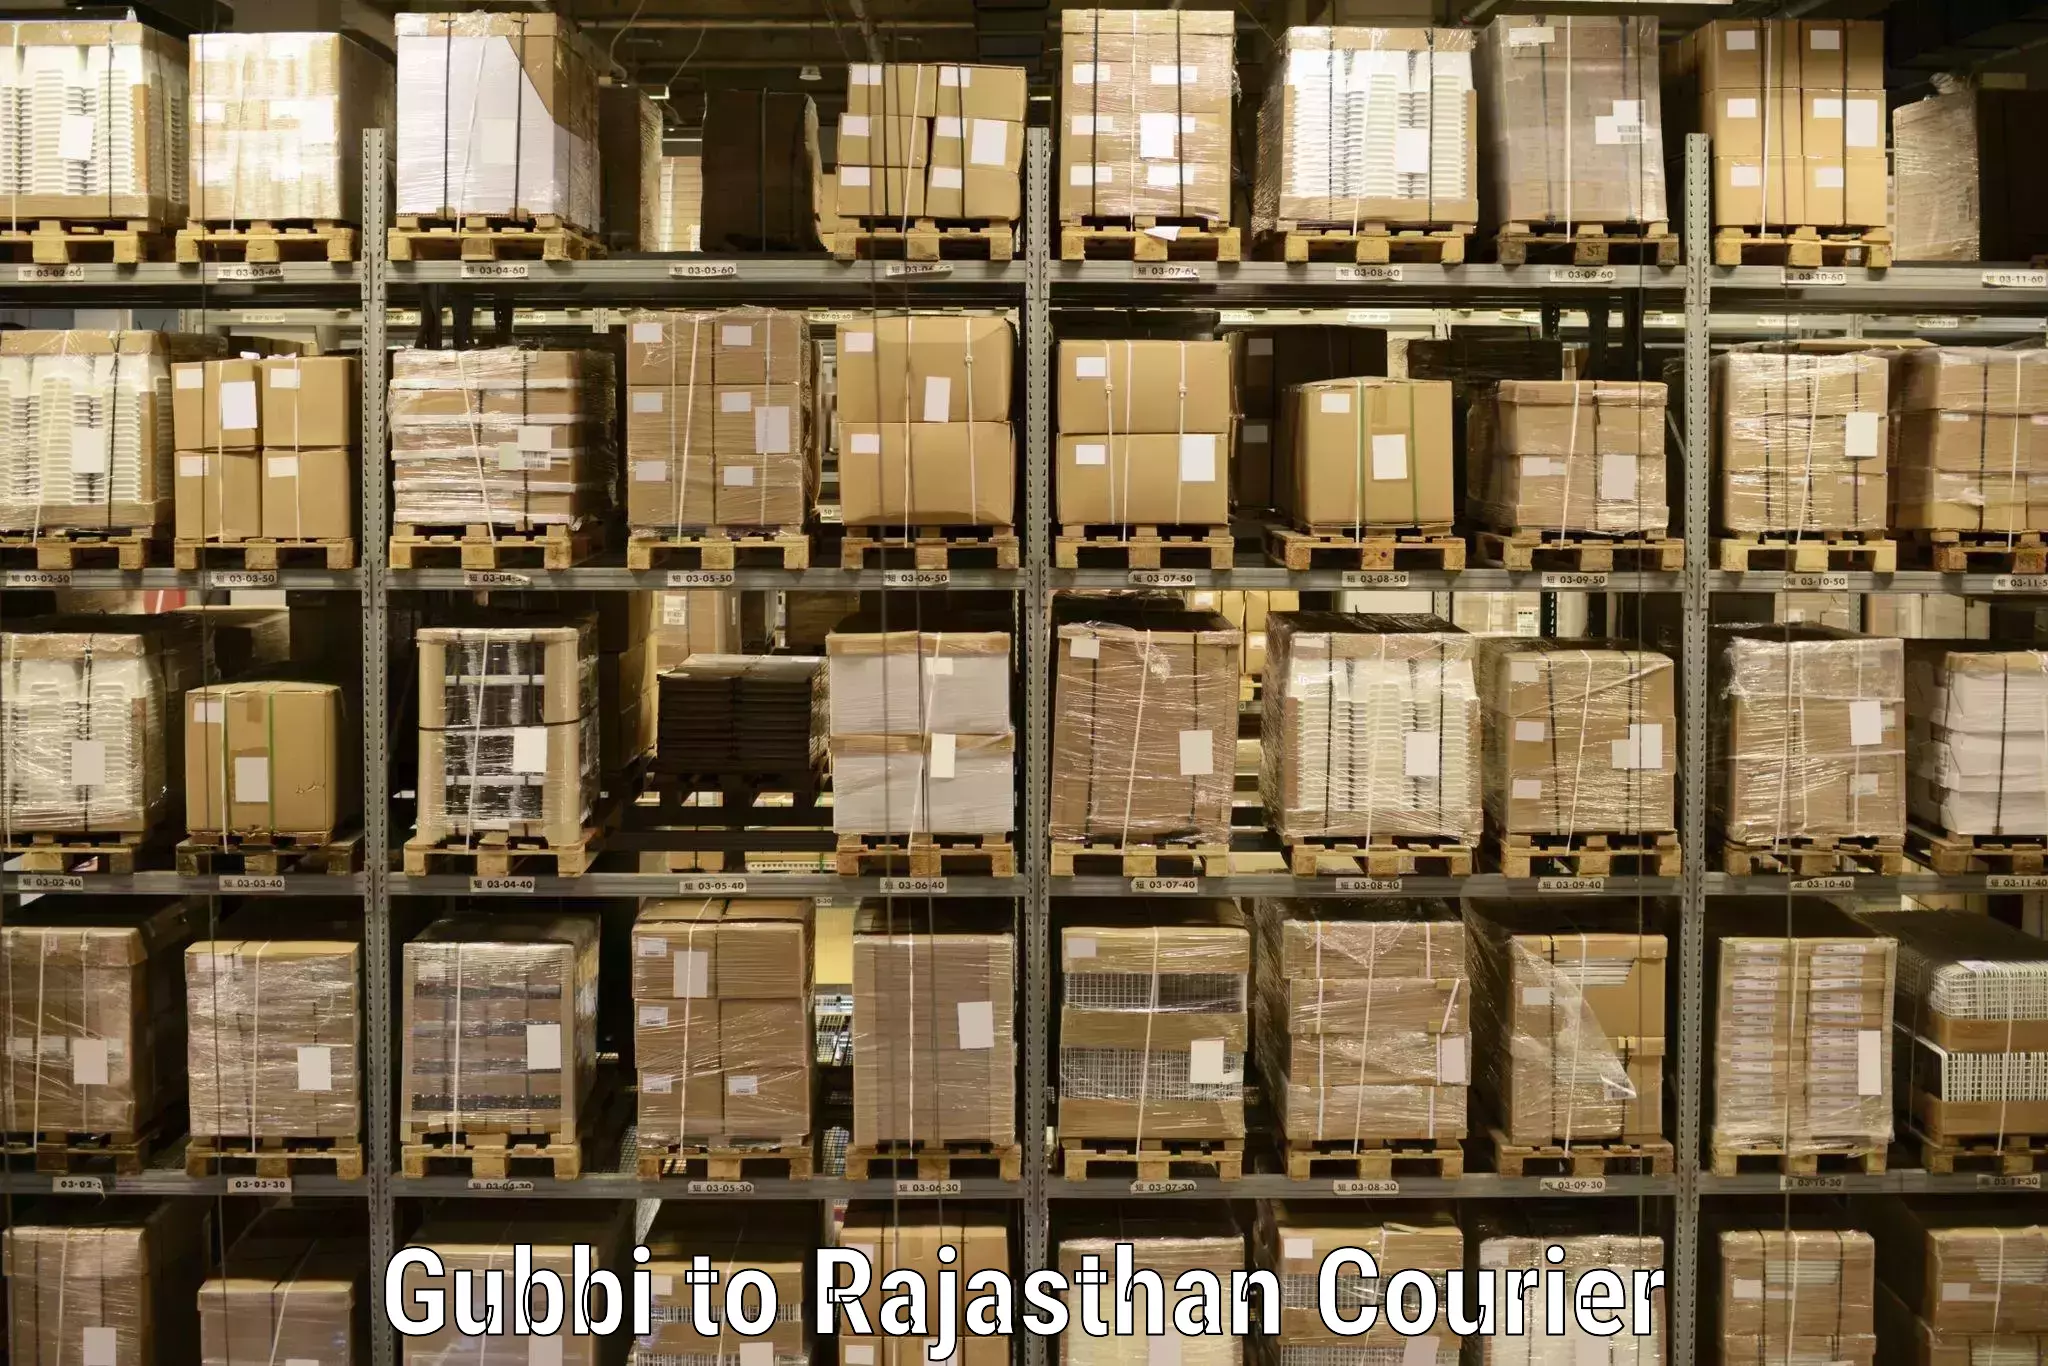 Professional parcel services in Gubbi to Kalwar